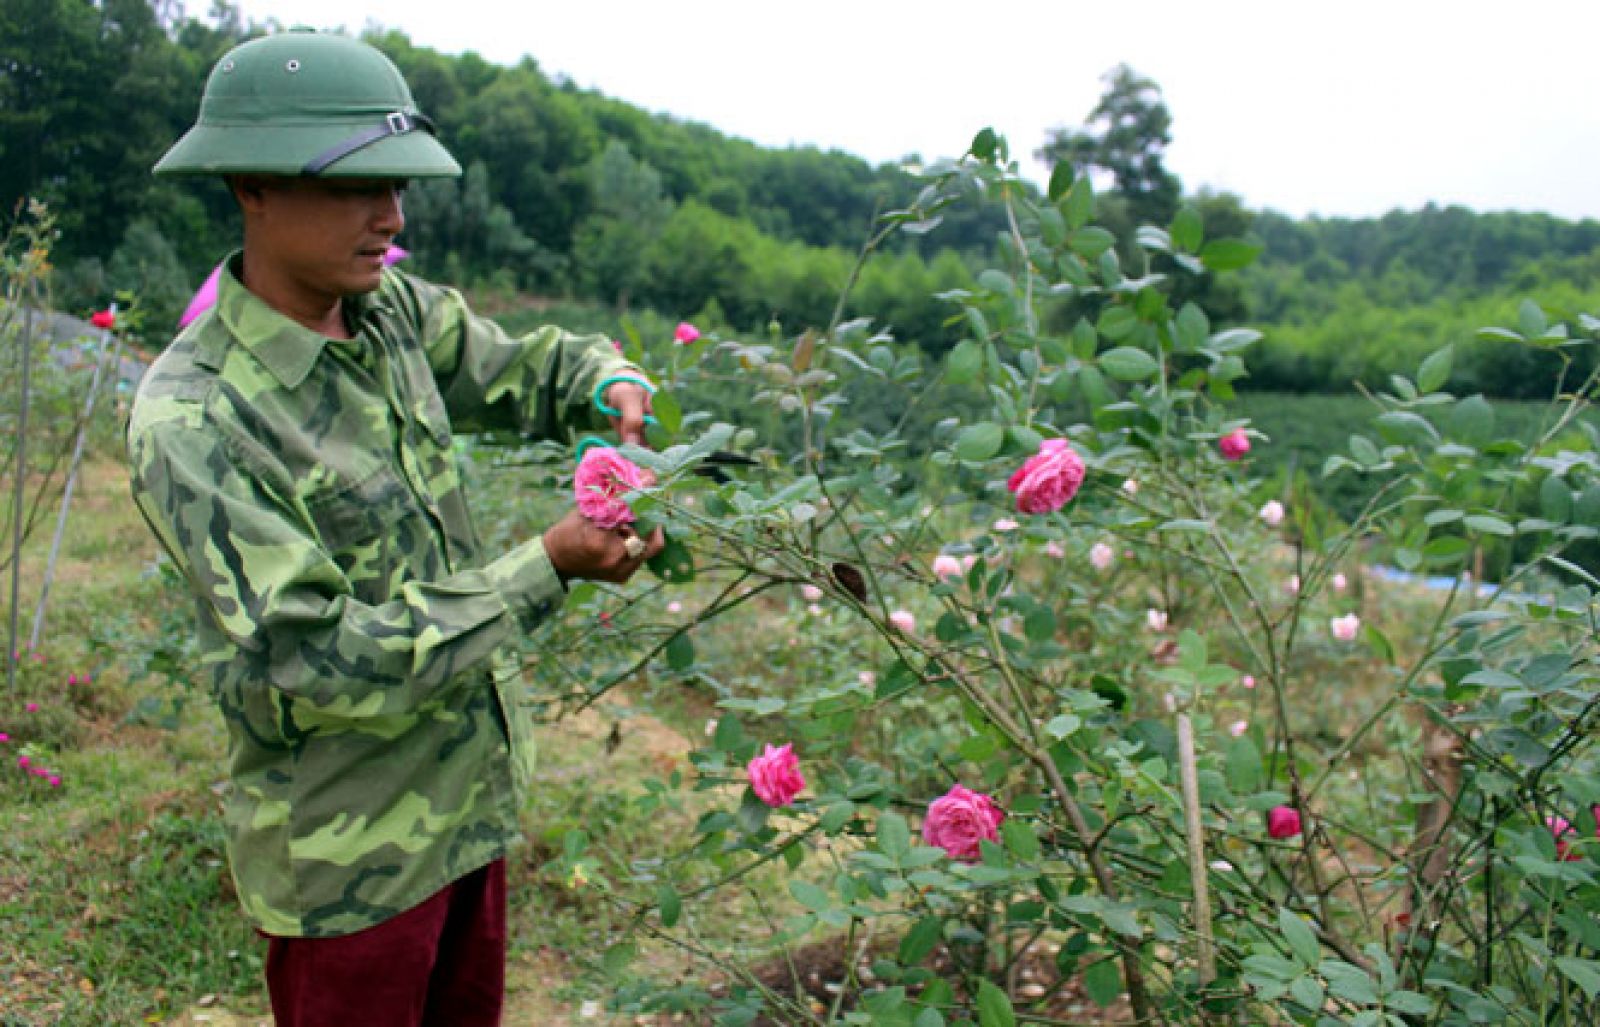 Anh Phan Văn Hoàn lựa chọn những bông hoa hồng cổ to, đẹp nhất để sản xuất các sản phẩm làm đẹp cho phụ nữ như mặt nạ hoa hồng, nước hoa hồng, nước tẩy da chết từ hoa hồng...